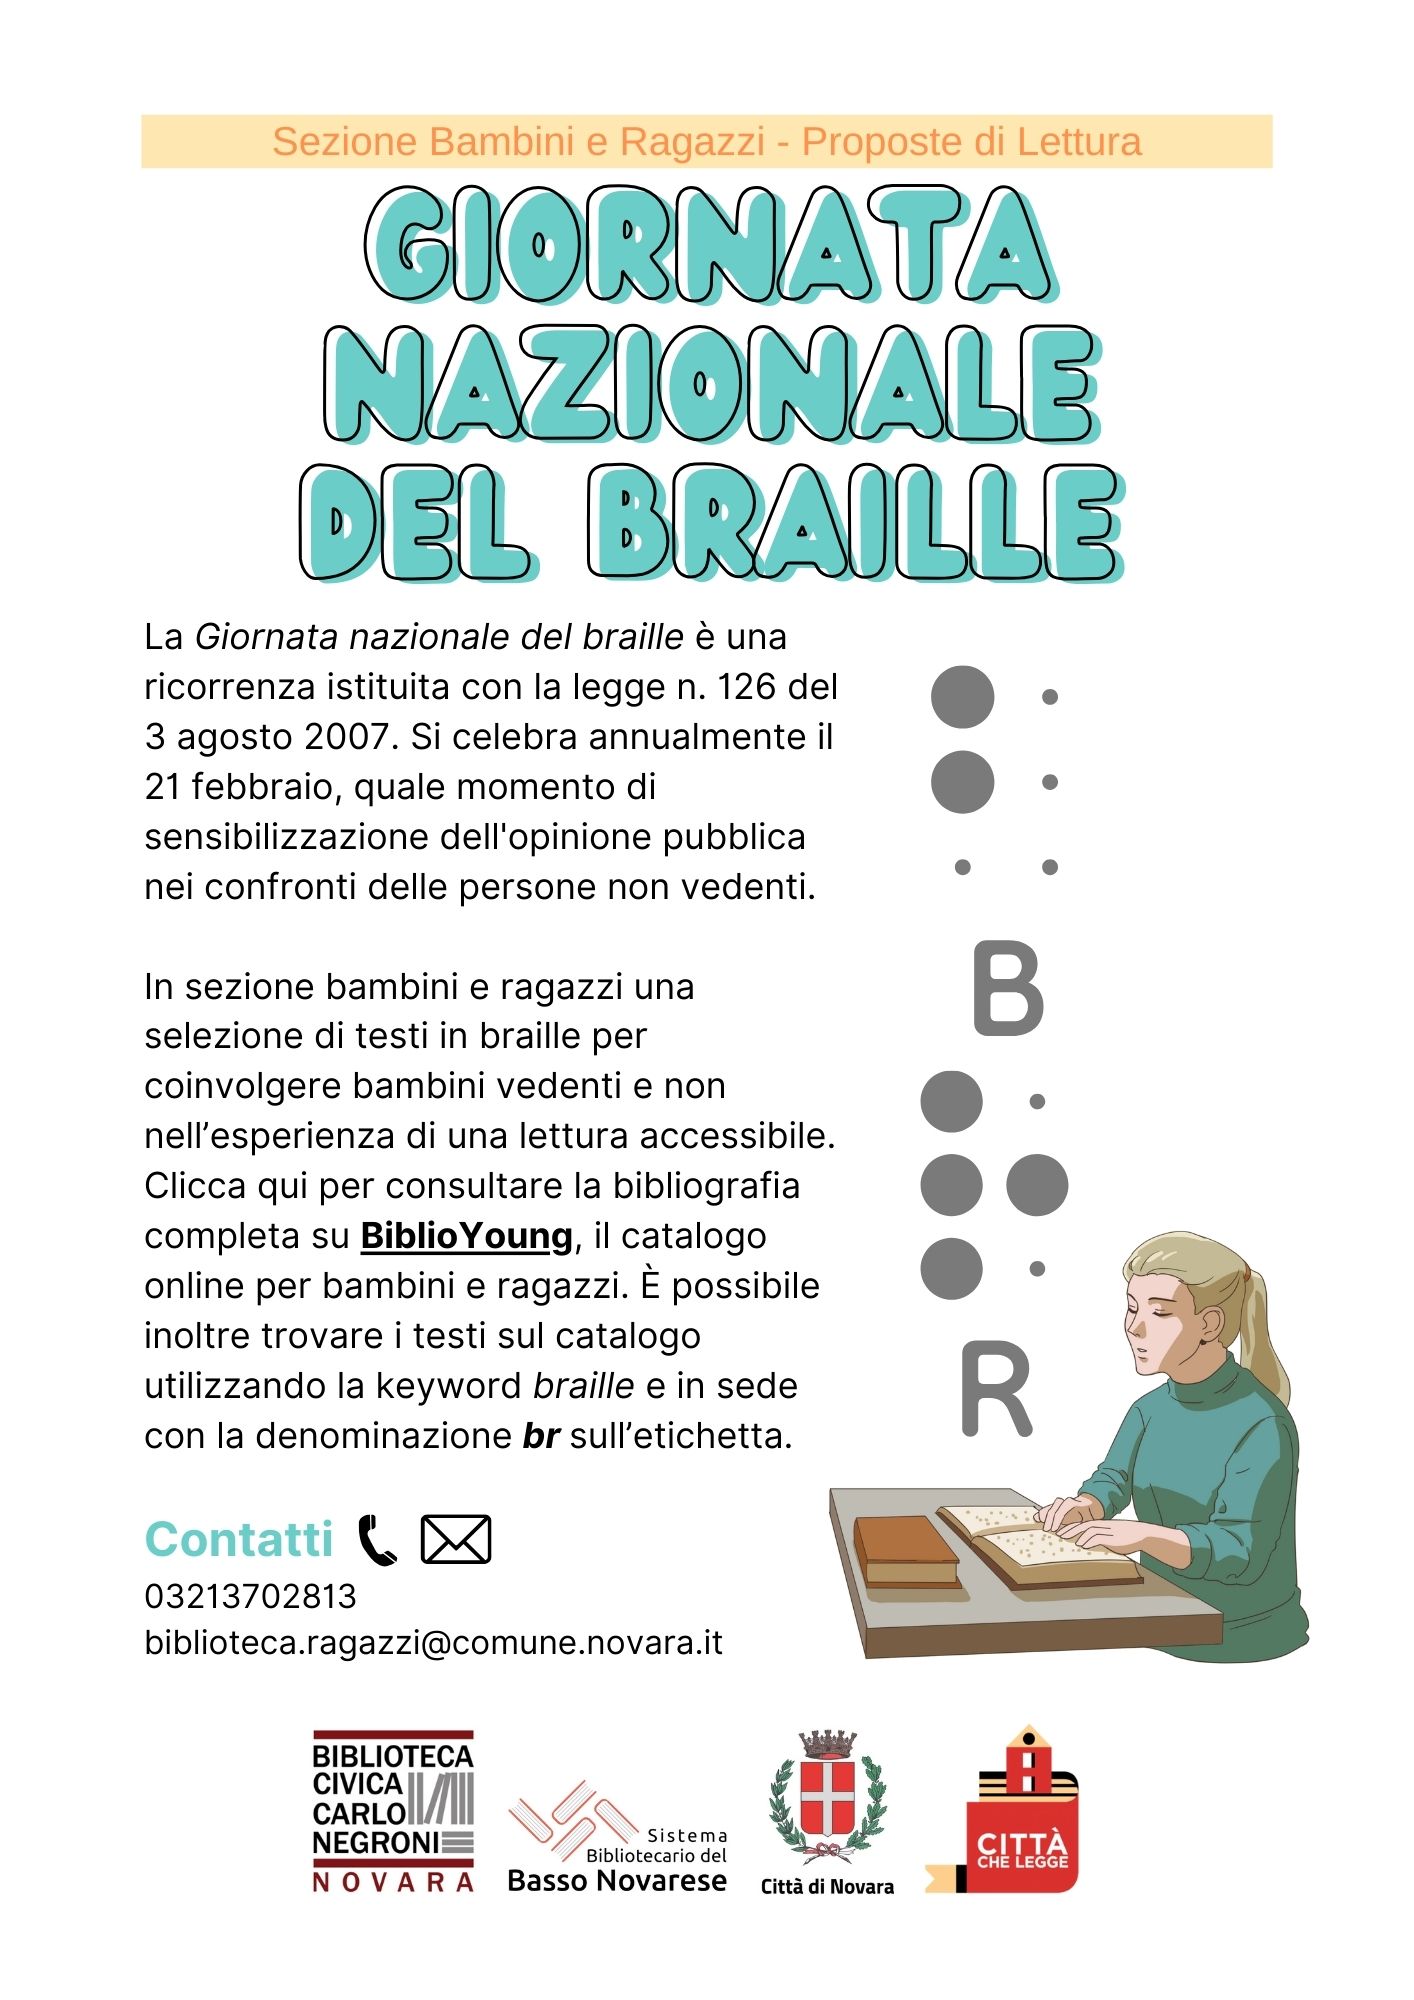 SBR - braille sito web